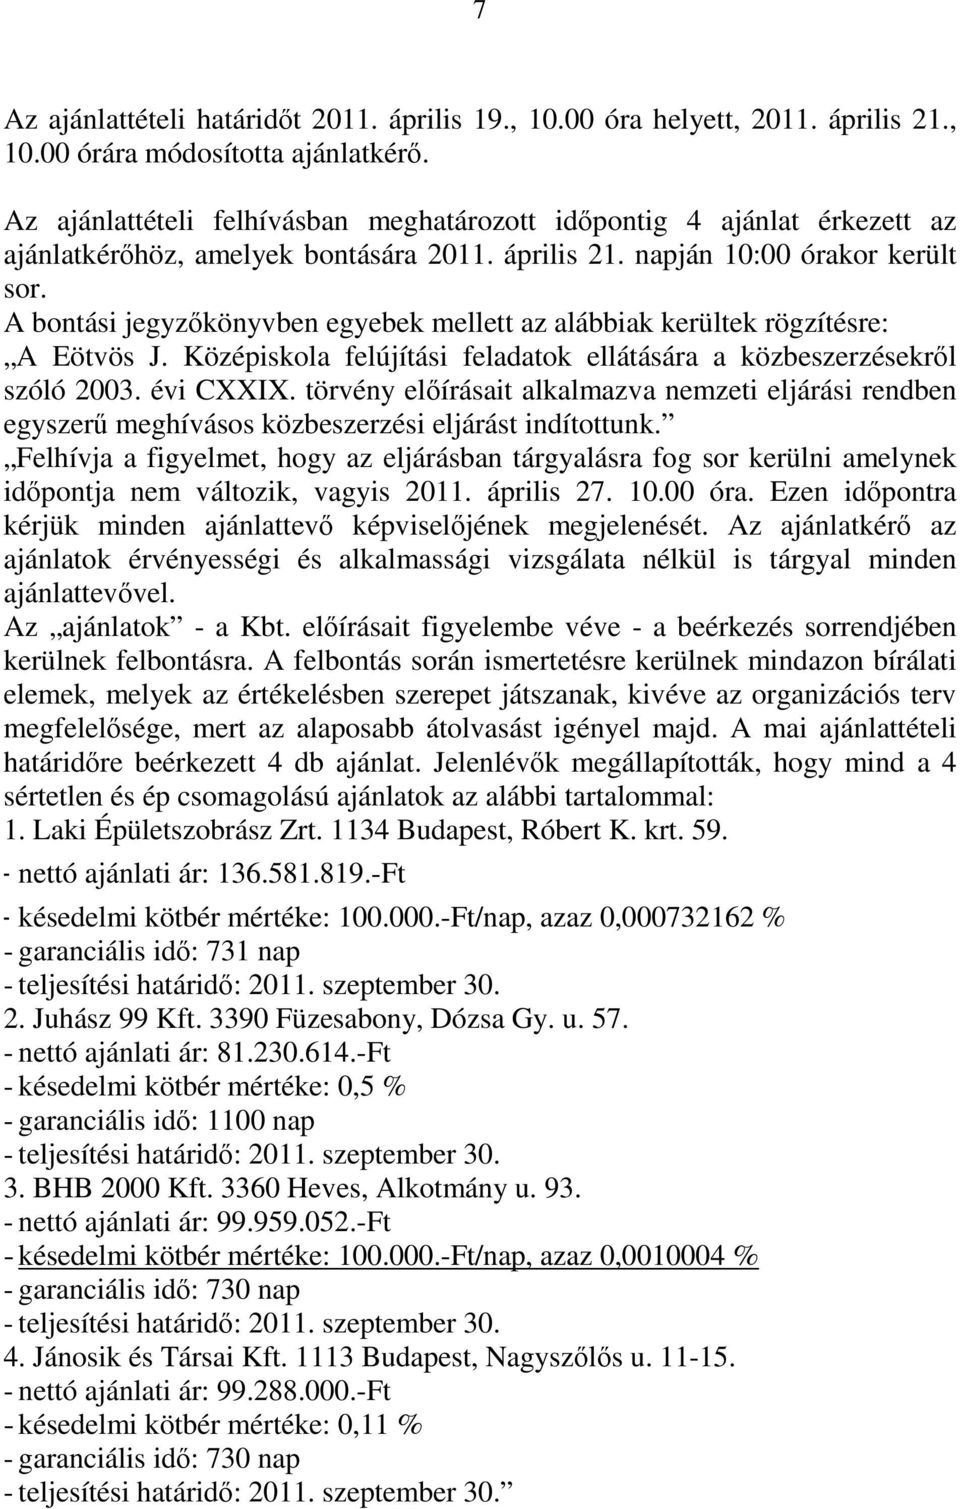 A bontási jegyzőkönyvben egyebek mellett az alábbiak kerültek rögzítésre: A Eötvös J. Középiskola felújítási feladatok ellátására a közbeszerzésekről szóló 2003. évi CXXIX.